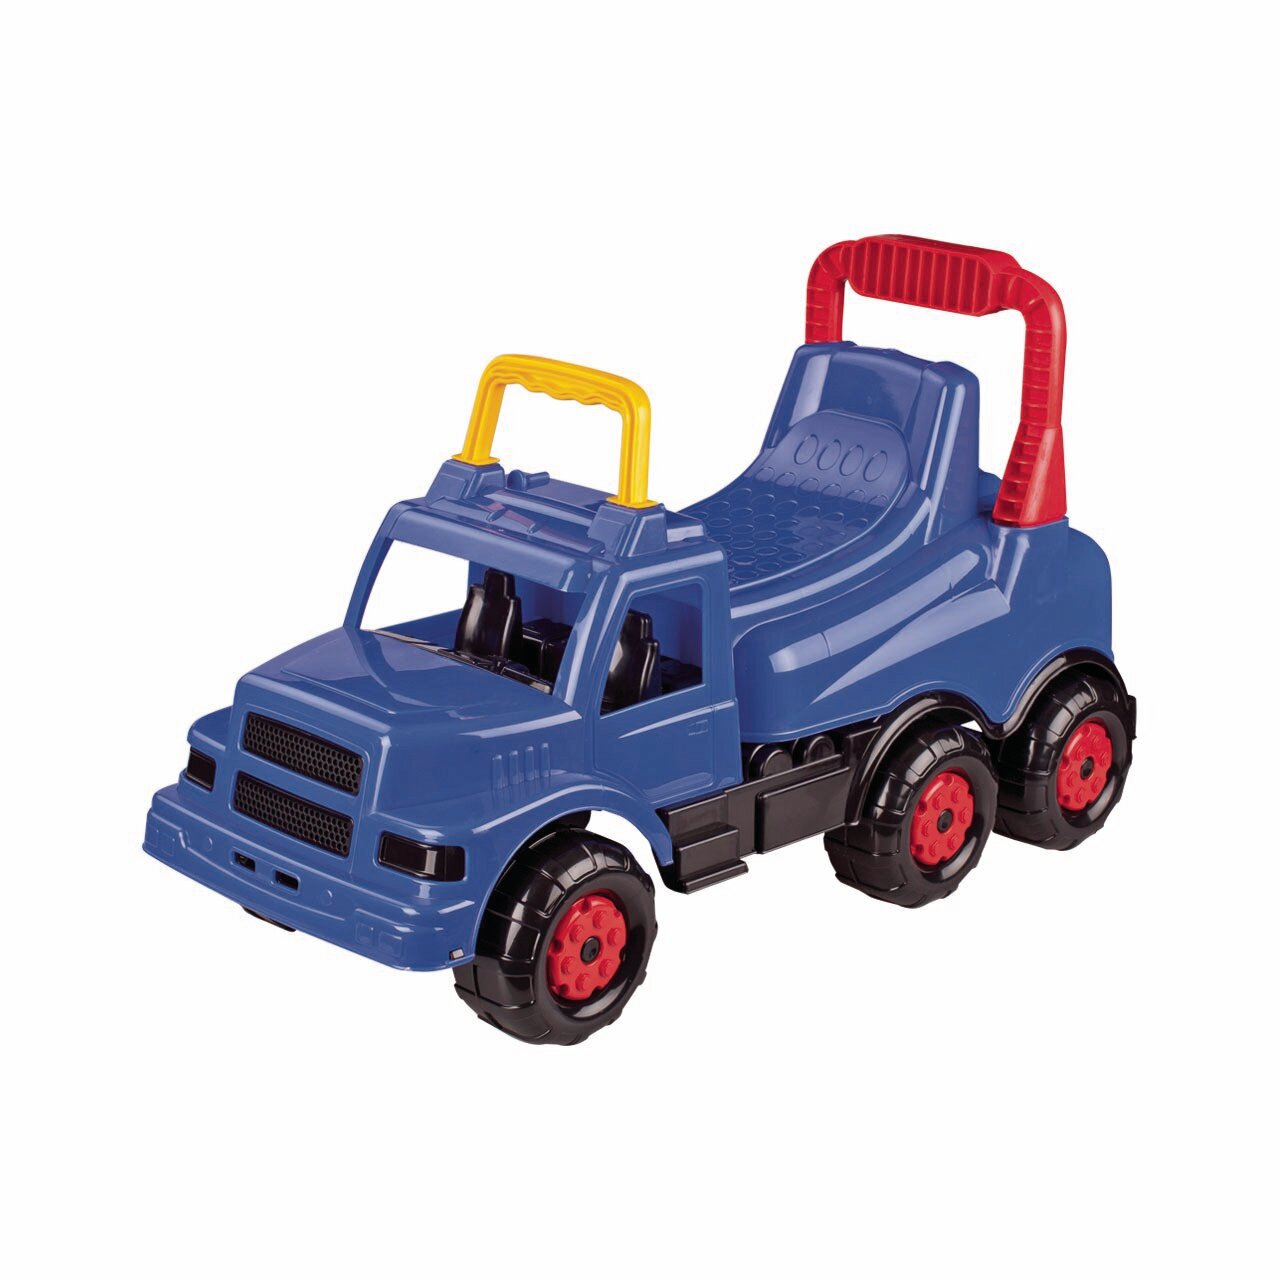 Машинка каталка детская Plast Land Веселые гонки, синяя